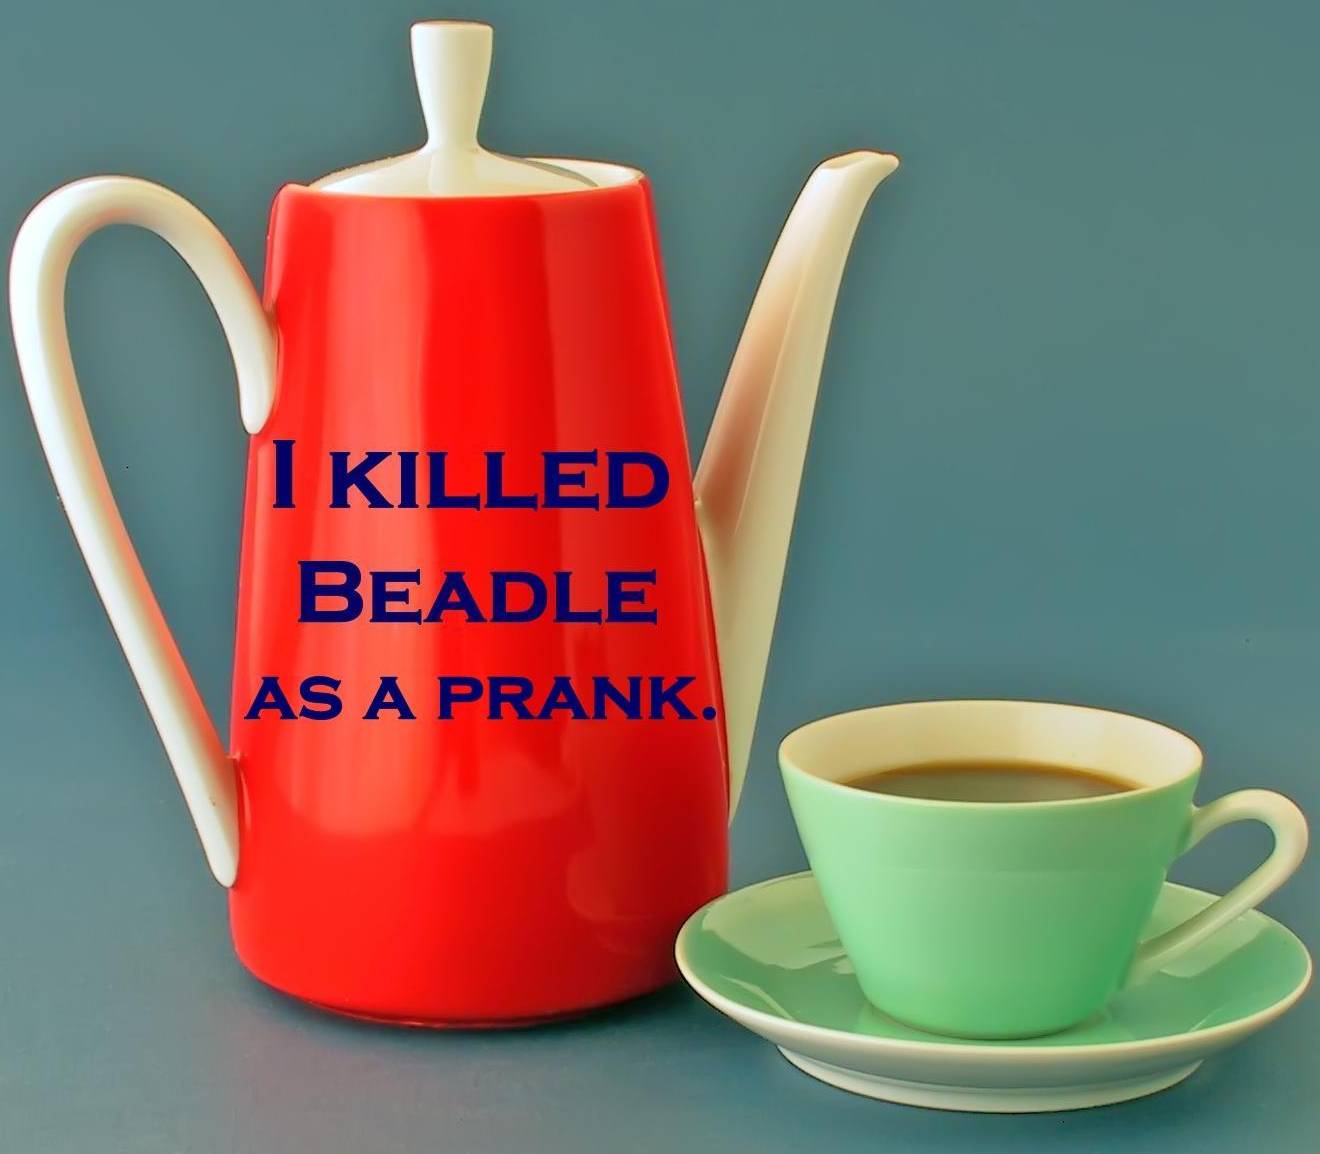 I killed Beadle as a prank.